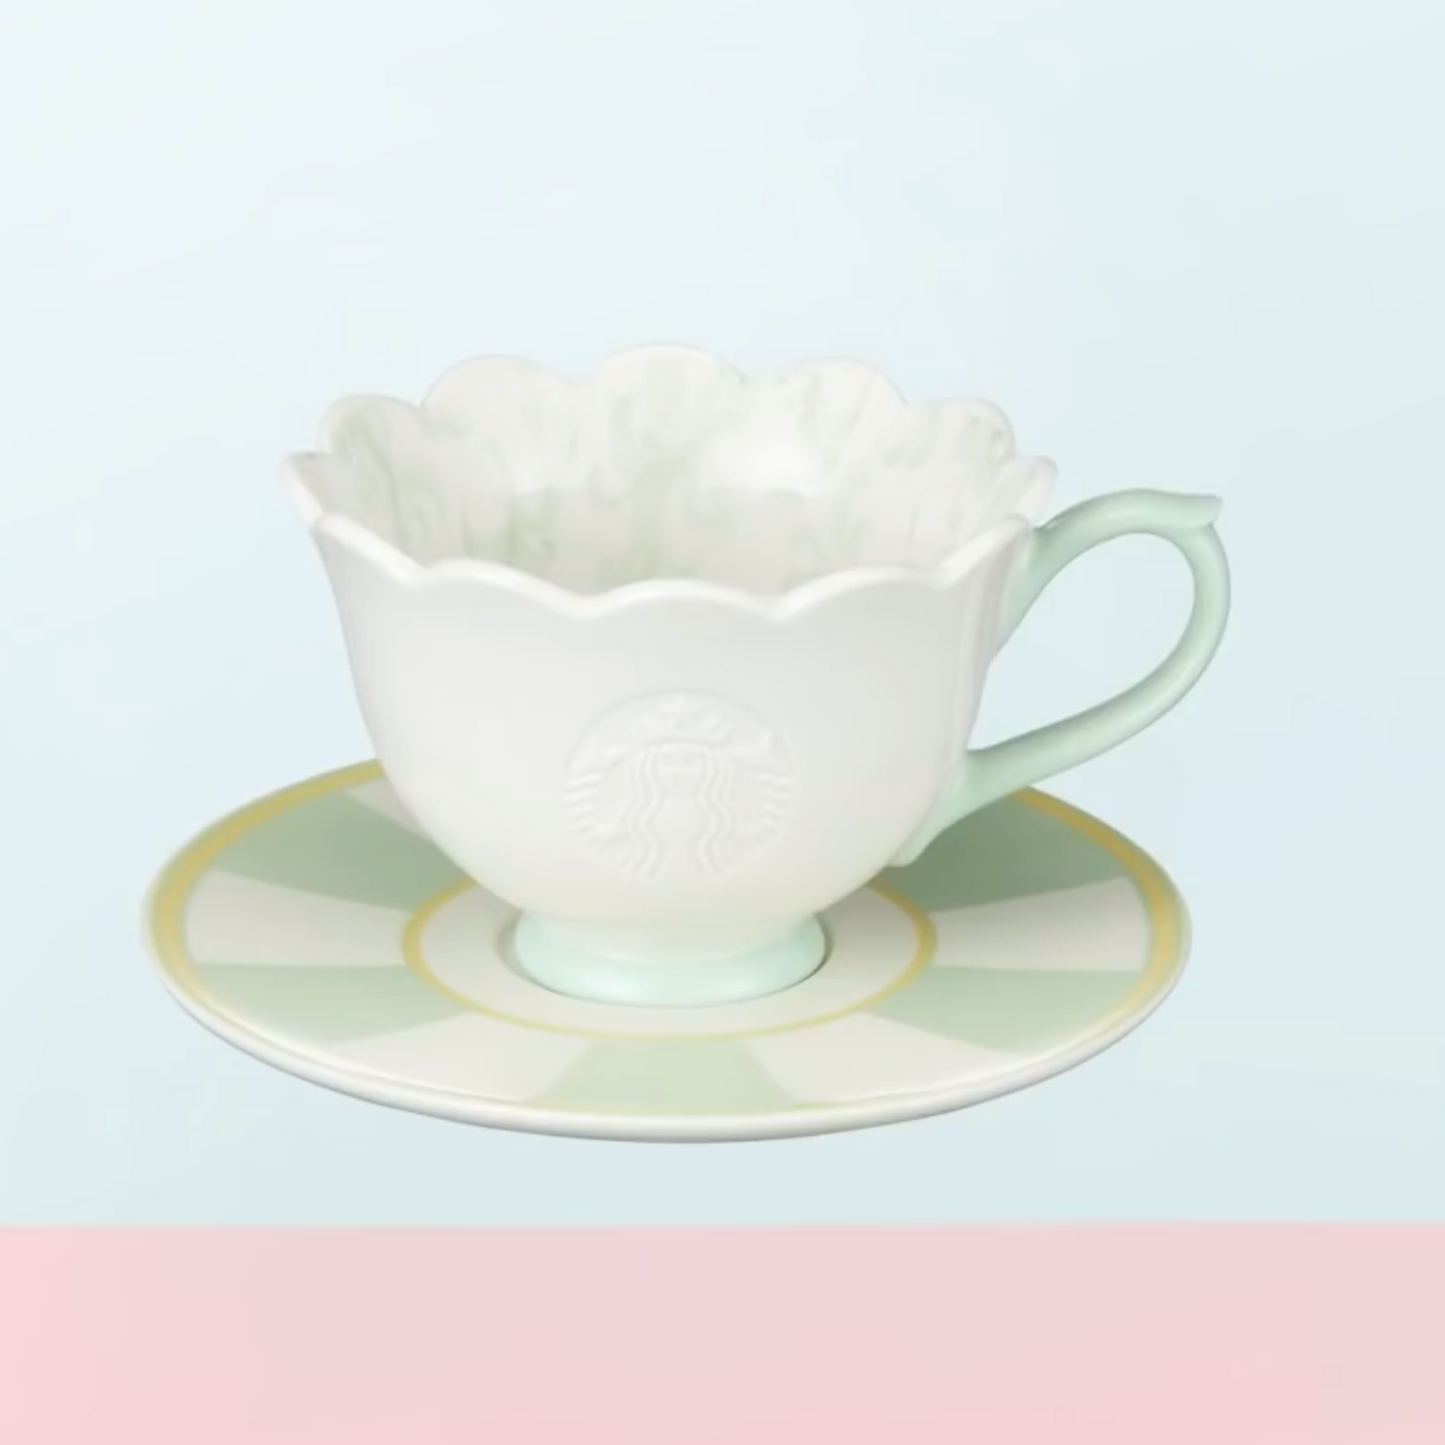 Starbucks Korea 22 Spring Flower Garden Light Green Mug & Saucer 237ml